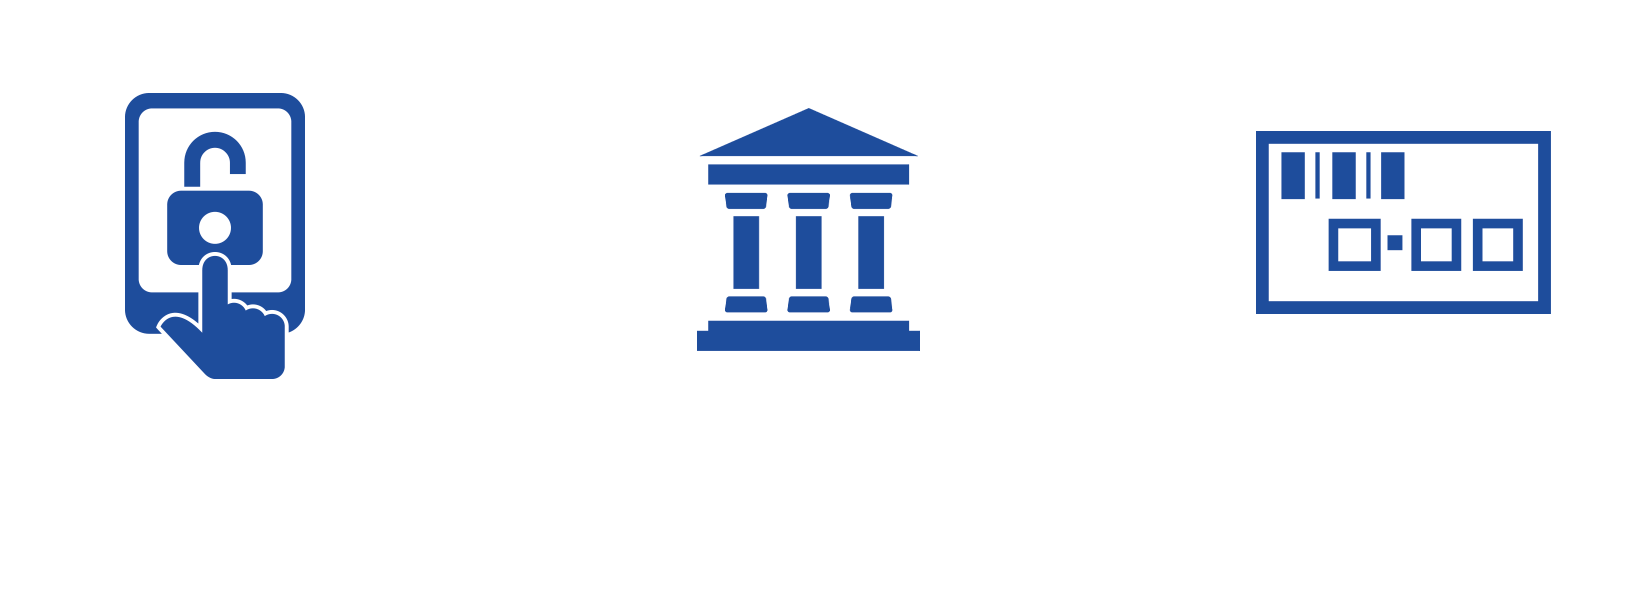 ログイン→銀行から購入資金を入金→馬券購入